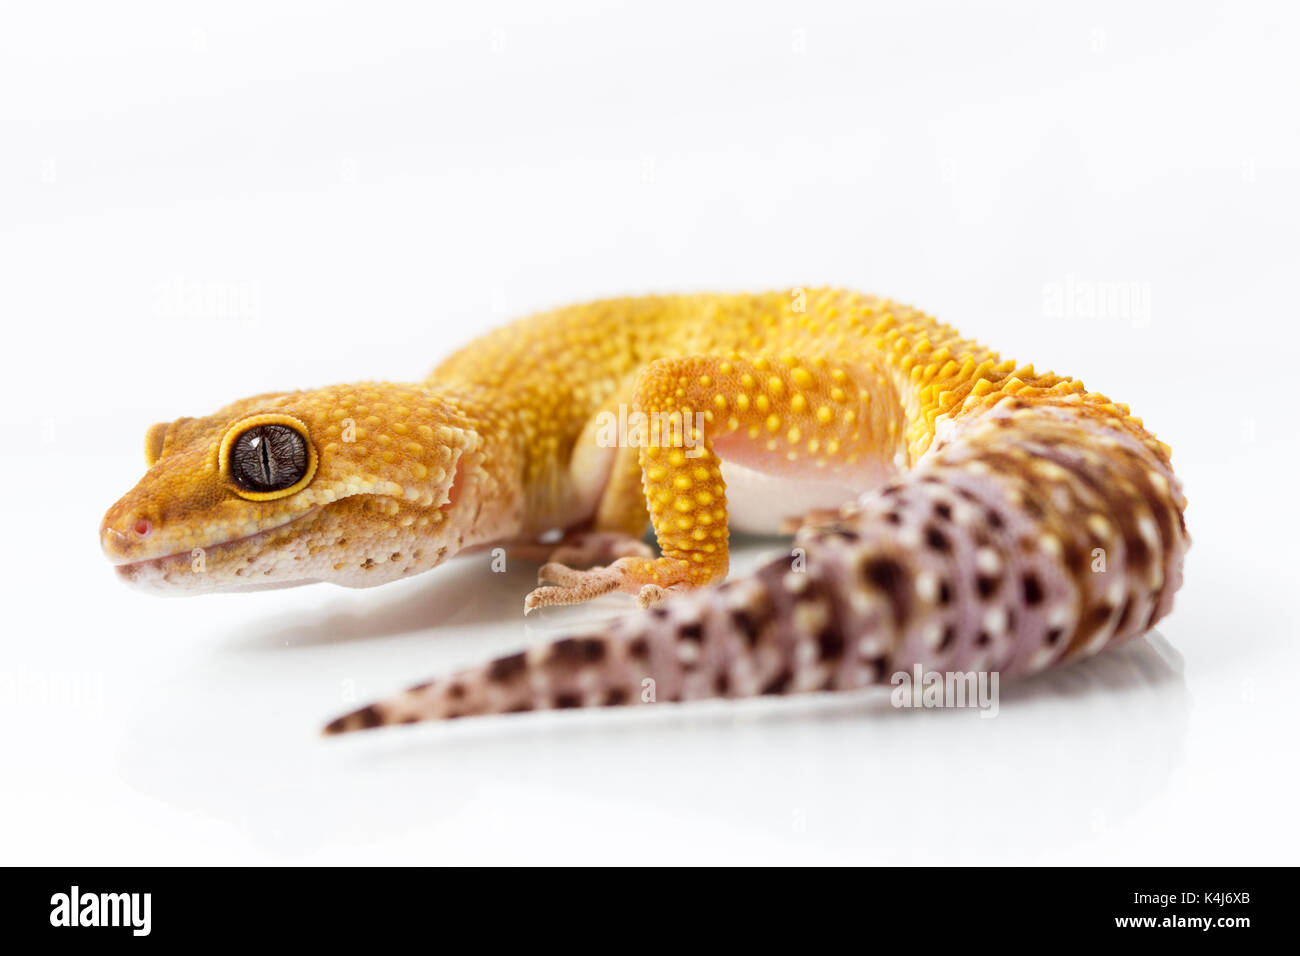 Gecko léopard orange et marche à l'avant sur fond blanc Banque D'Images